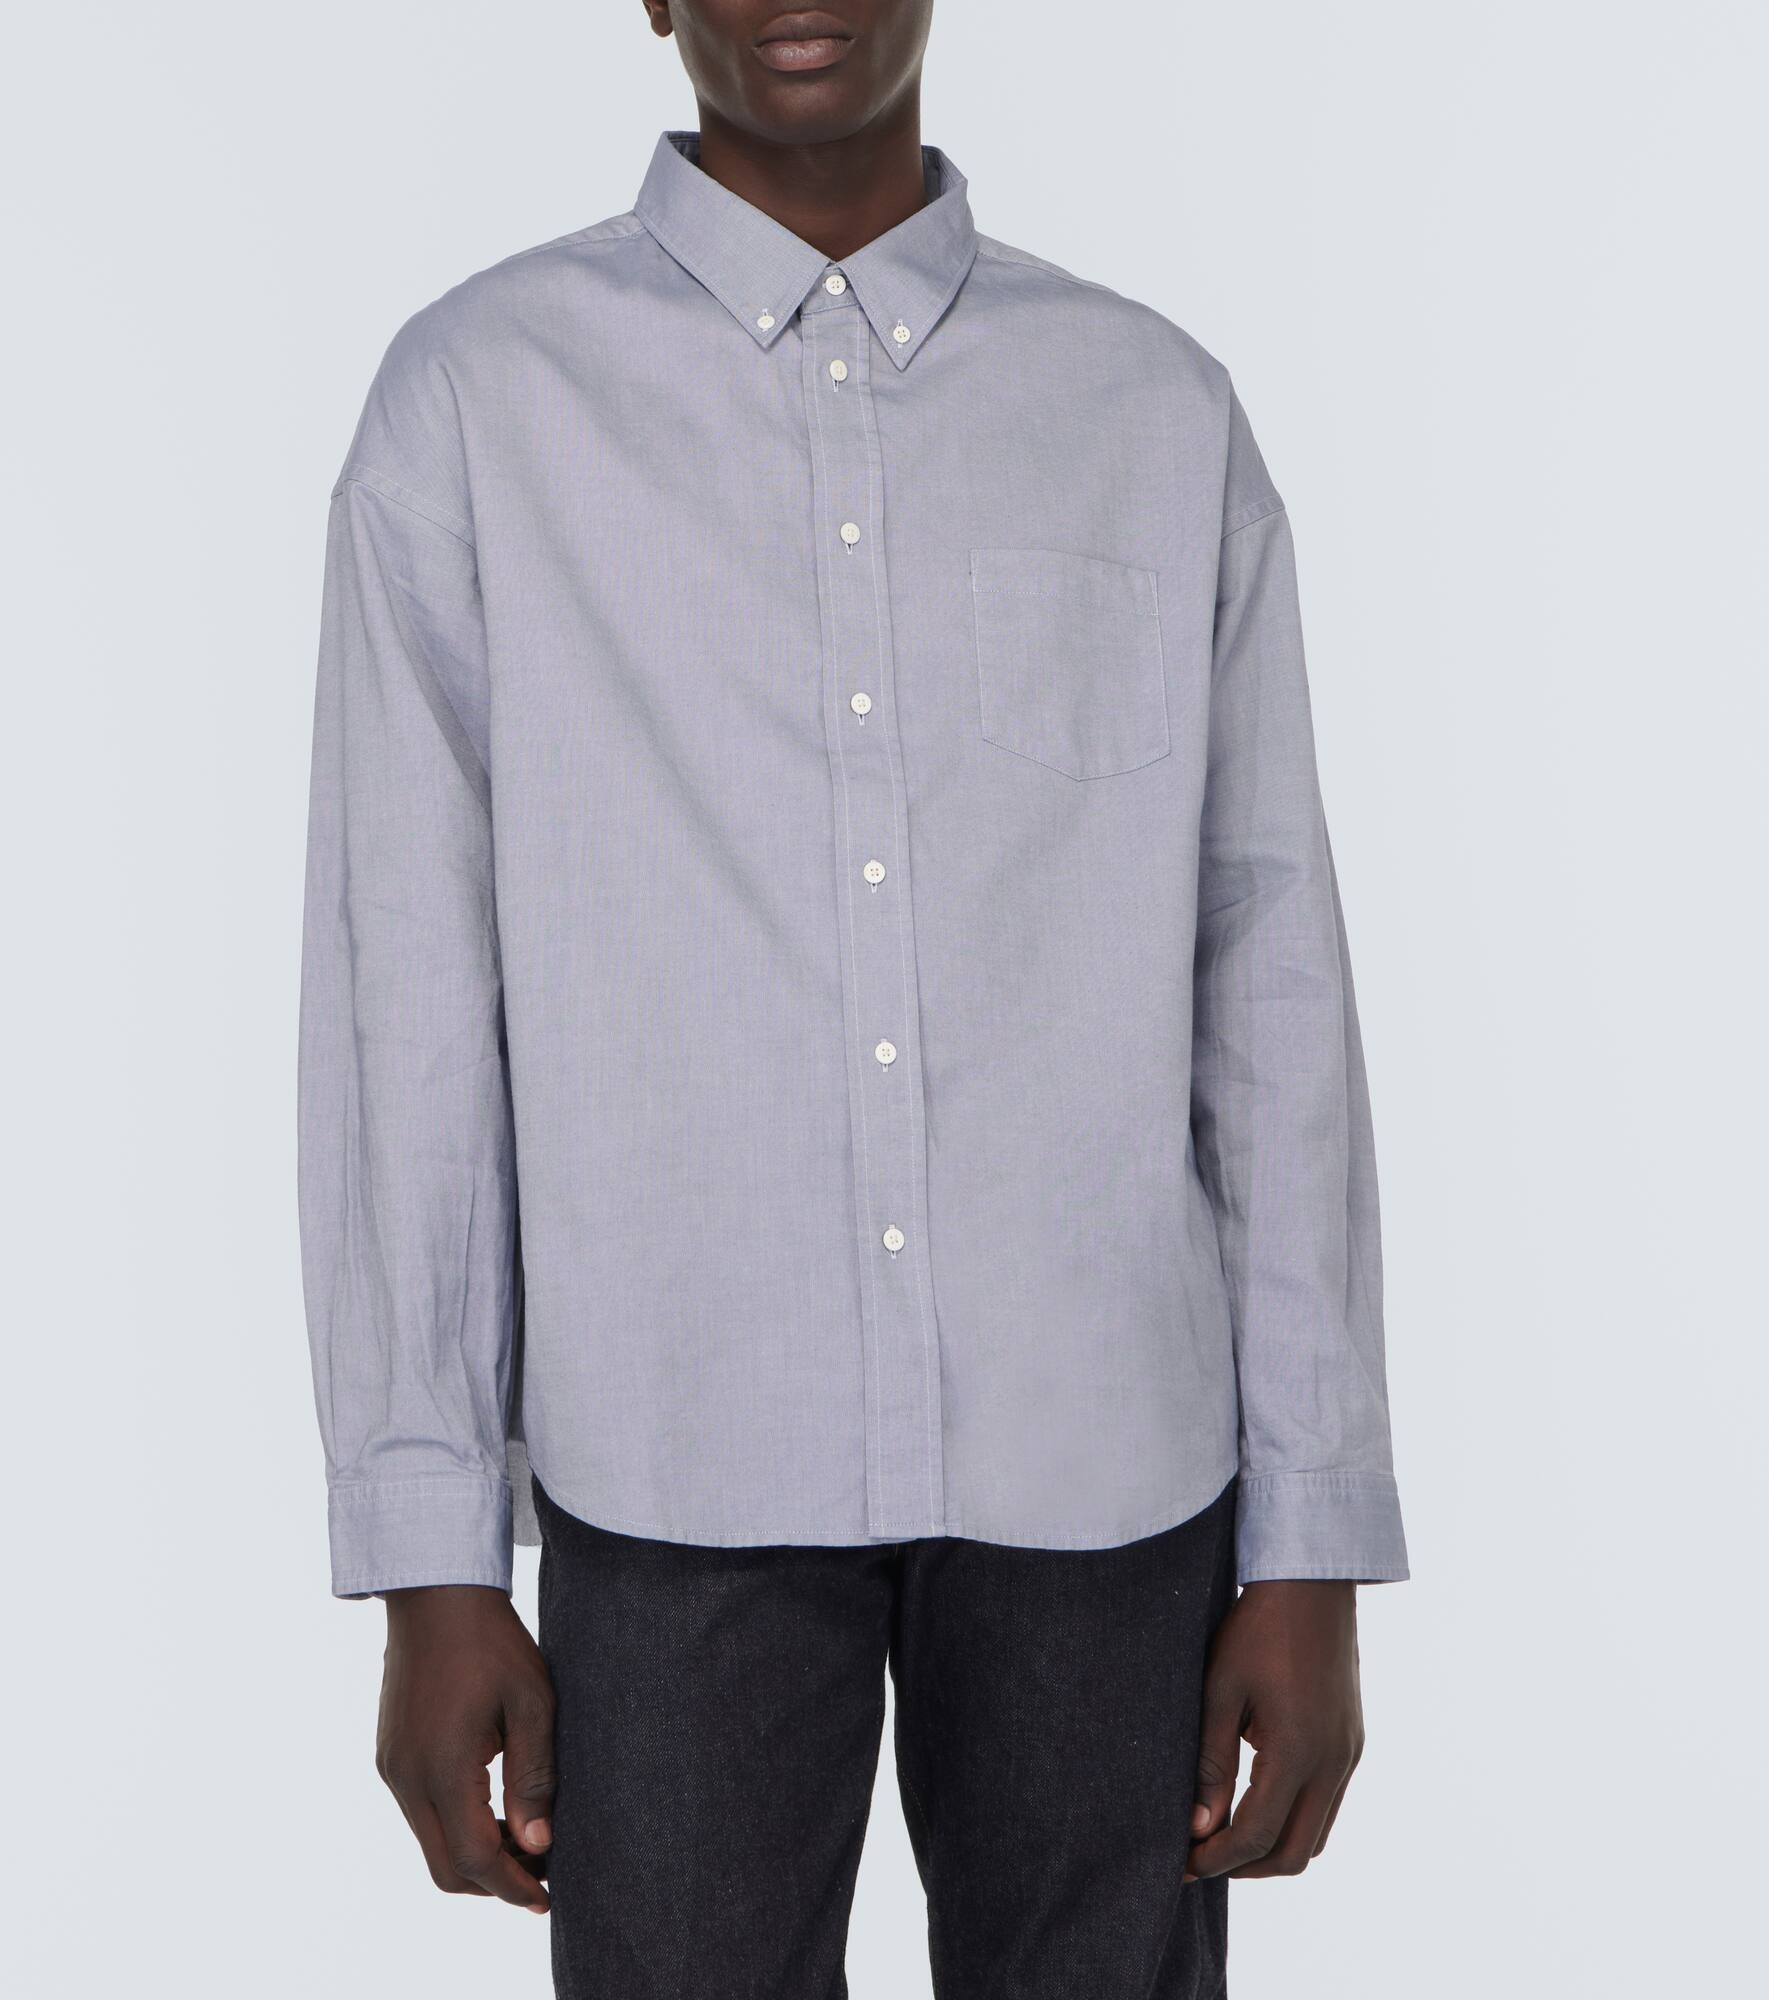 Cotton Oxford shirt - 3